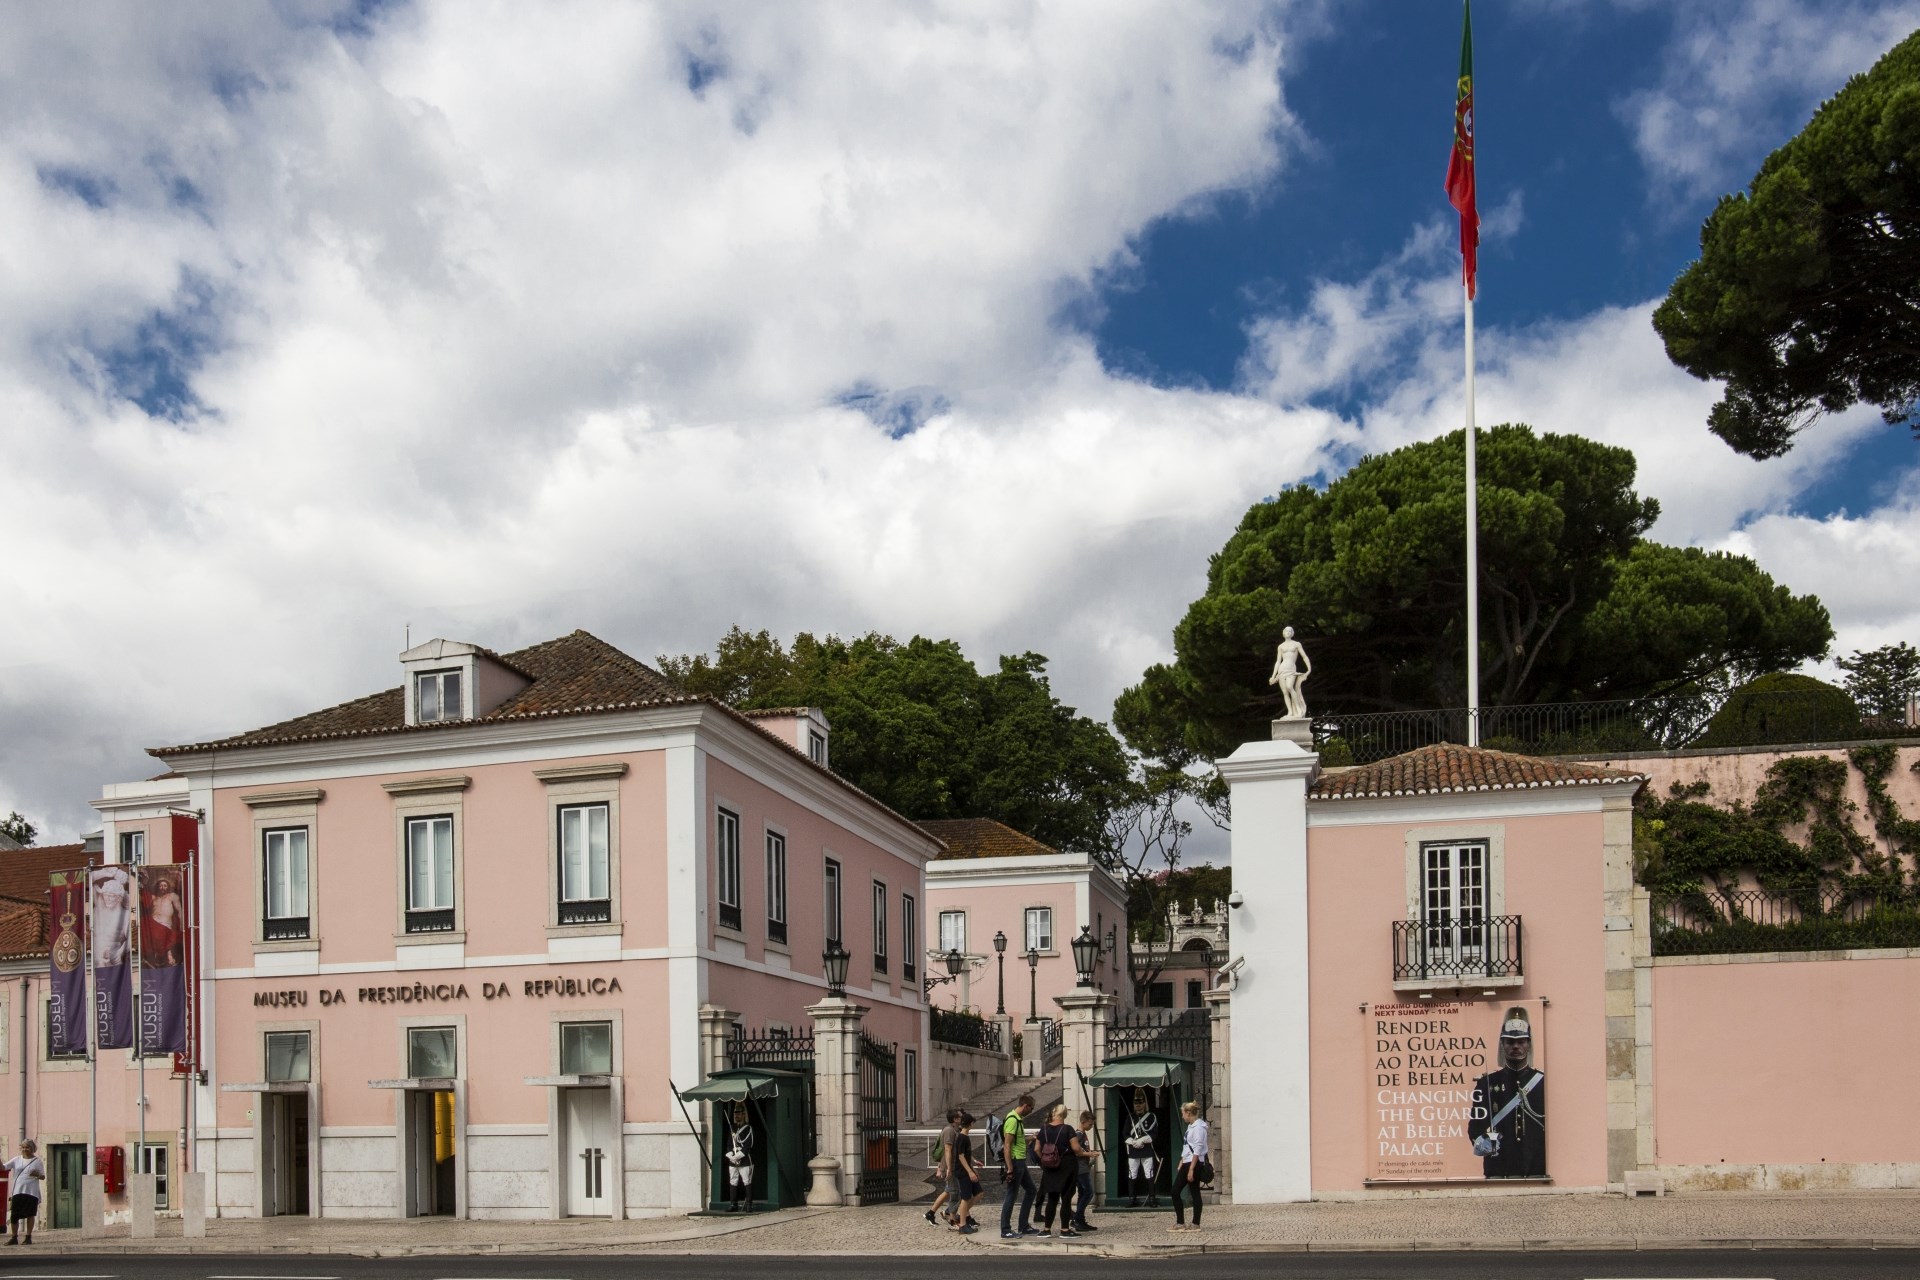 Vista parcial da fachada principal do Palácio de Belém; à esquerda, a entrada do Museu.